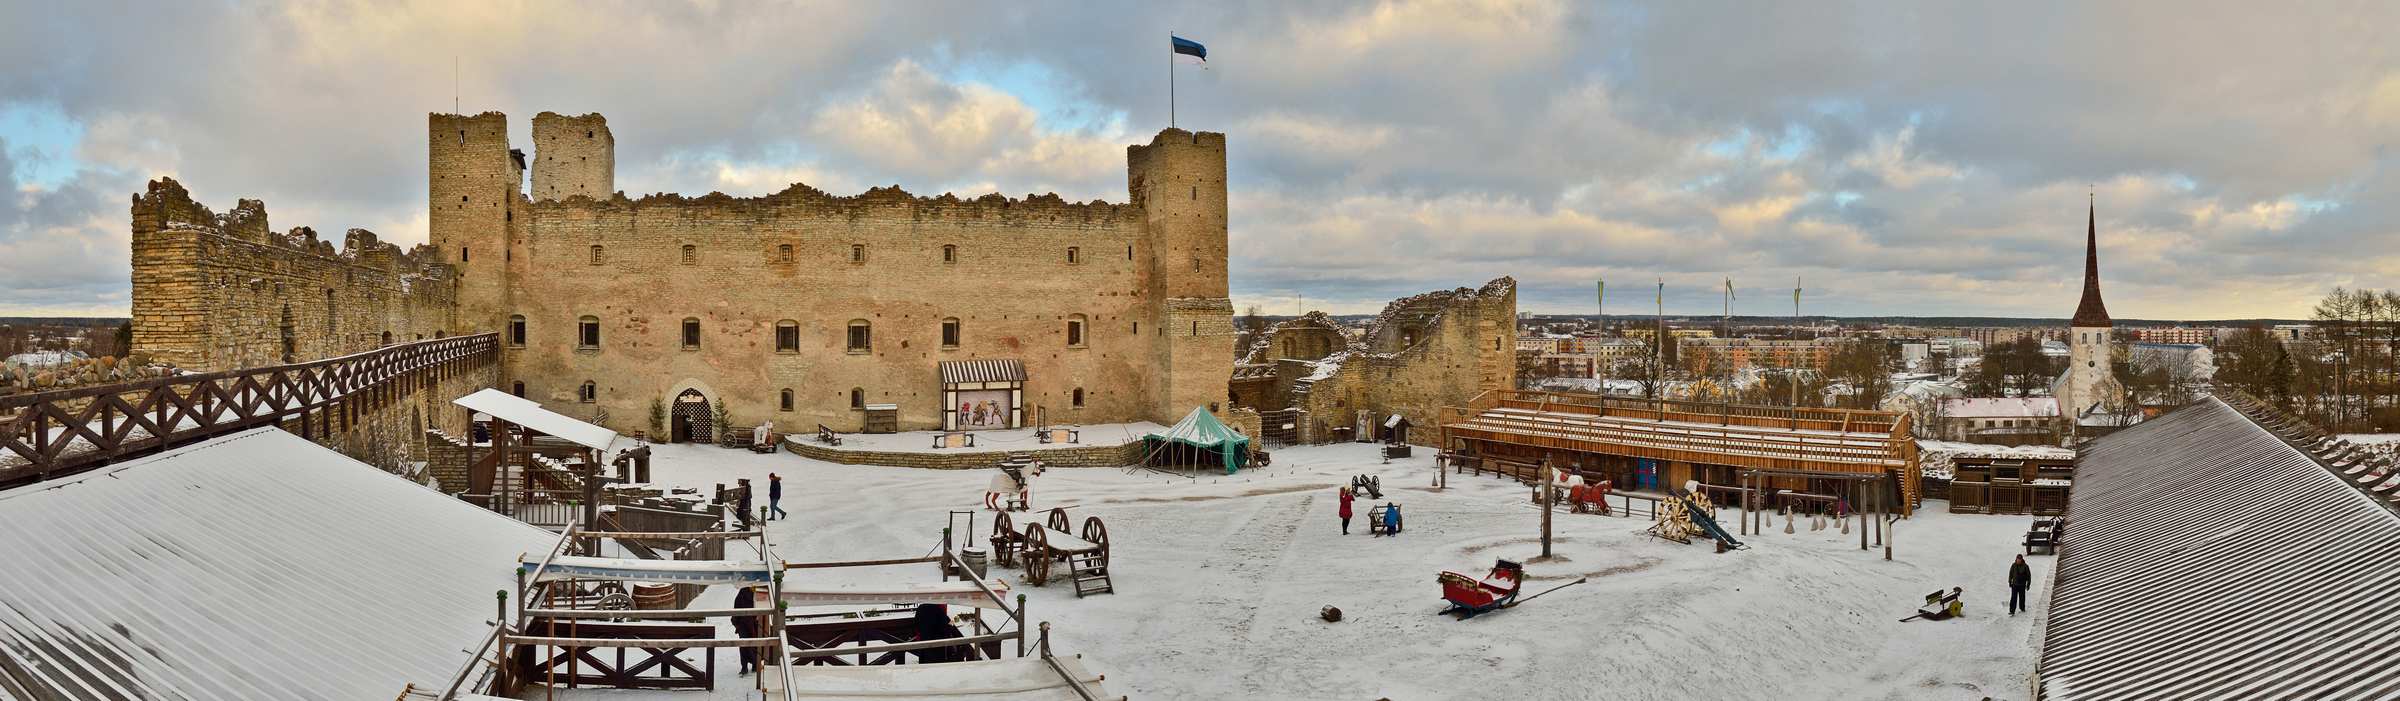 Замок Раквере в Эстонии